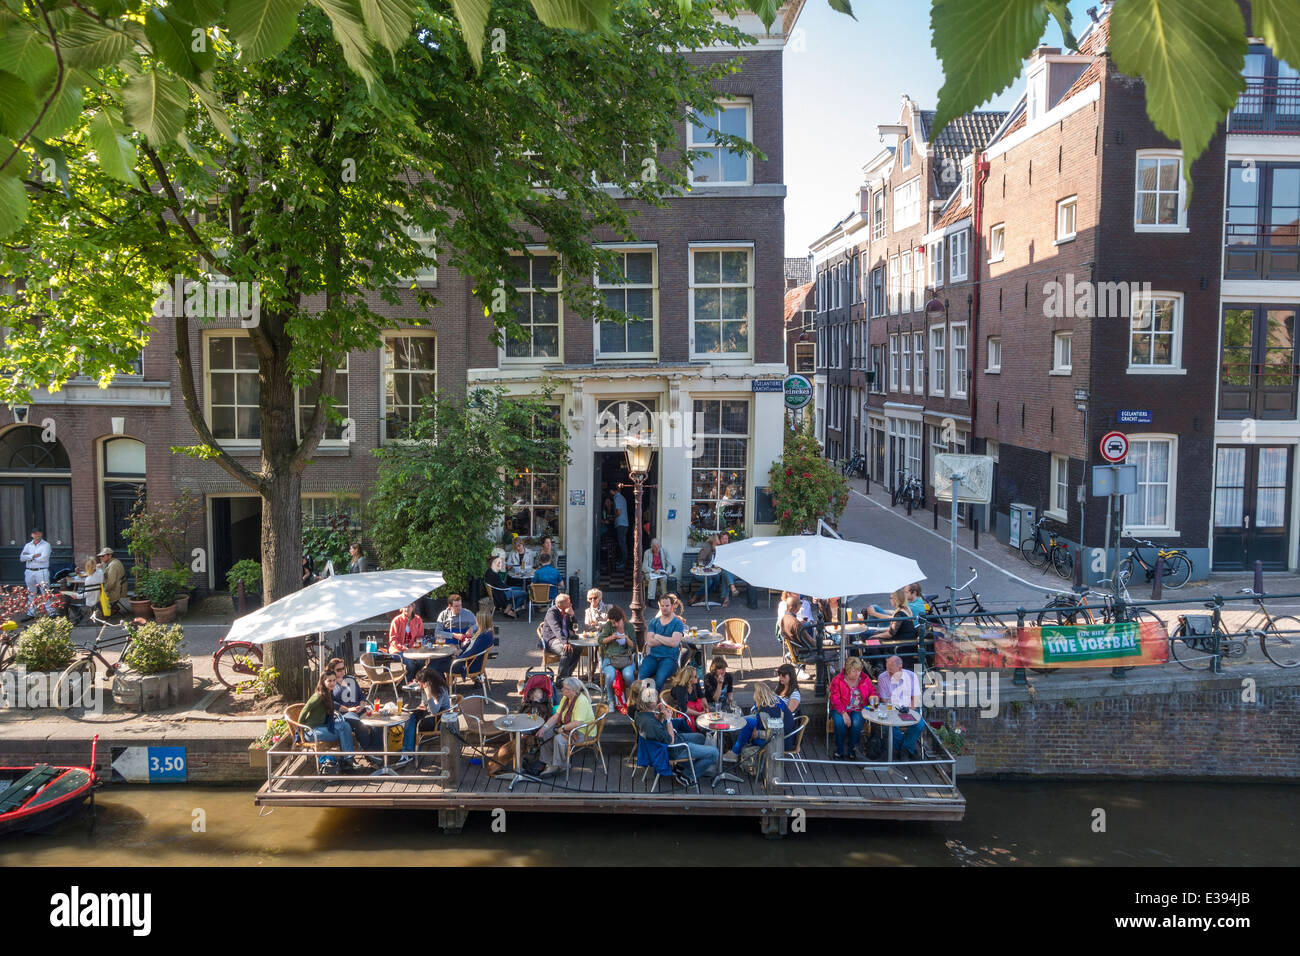 Amsterdam Cafe 't Smalle sul Egelantiersgracht nel quartiere di Jordaan con la sua esclusiva terrazza coperta su pali nel canale. Foto Stock